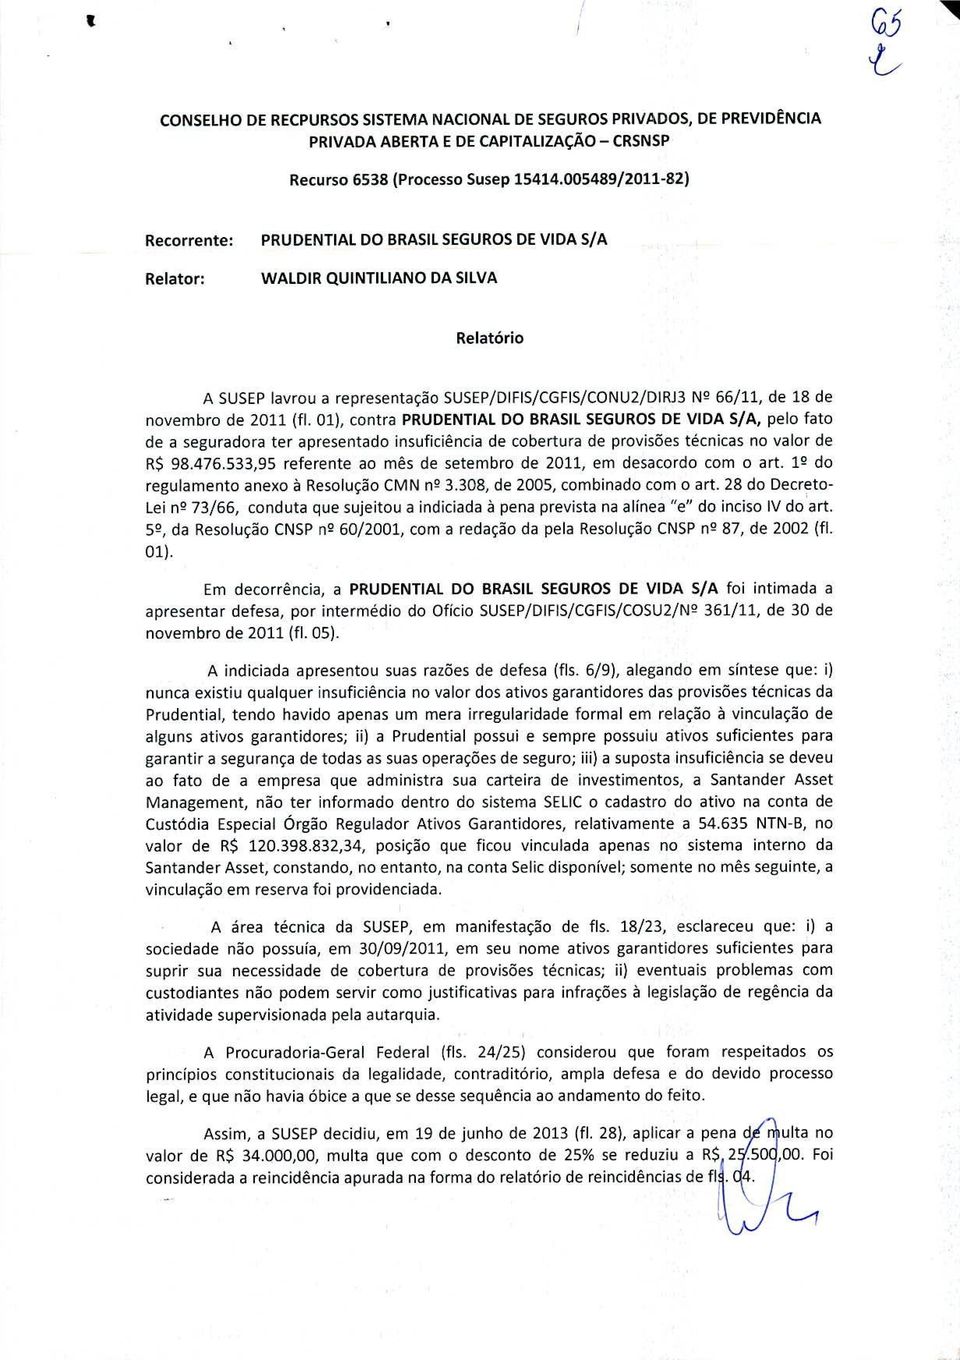 novembro de 2011 (fi. 01), contra PRUDENTIAL DO BRASIL SEGUROS DE VIDA S/A, pelo fato de a seguradora ter apresentado insuficiência de cobertura de provisões técnicas no valor de R$ 98.476.